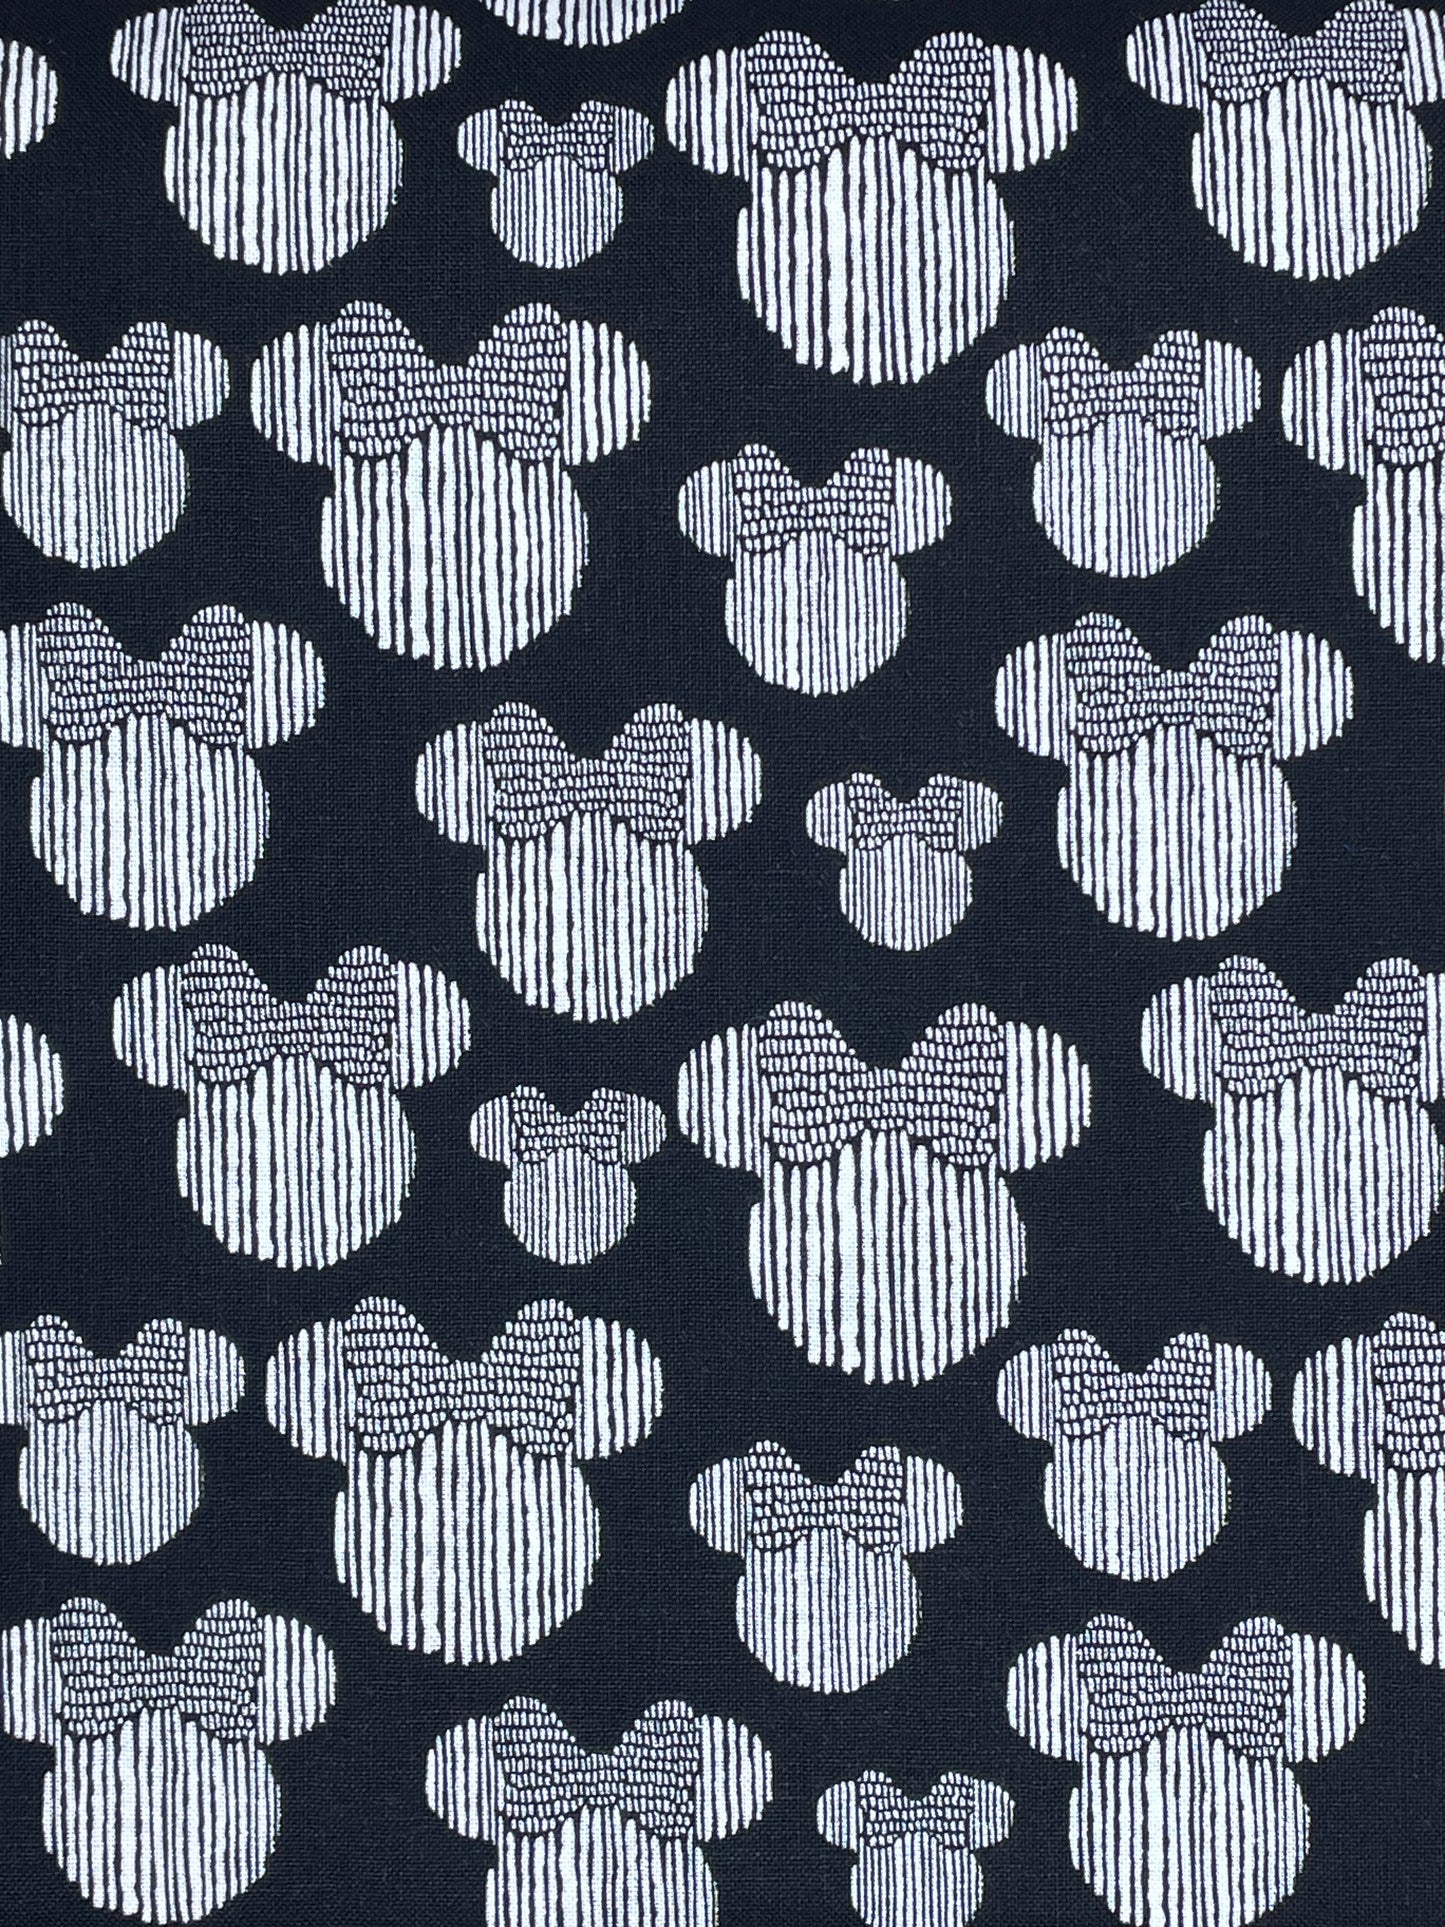 Disney Fabric Yardage